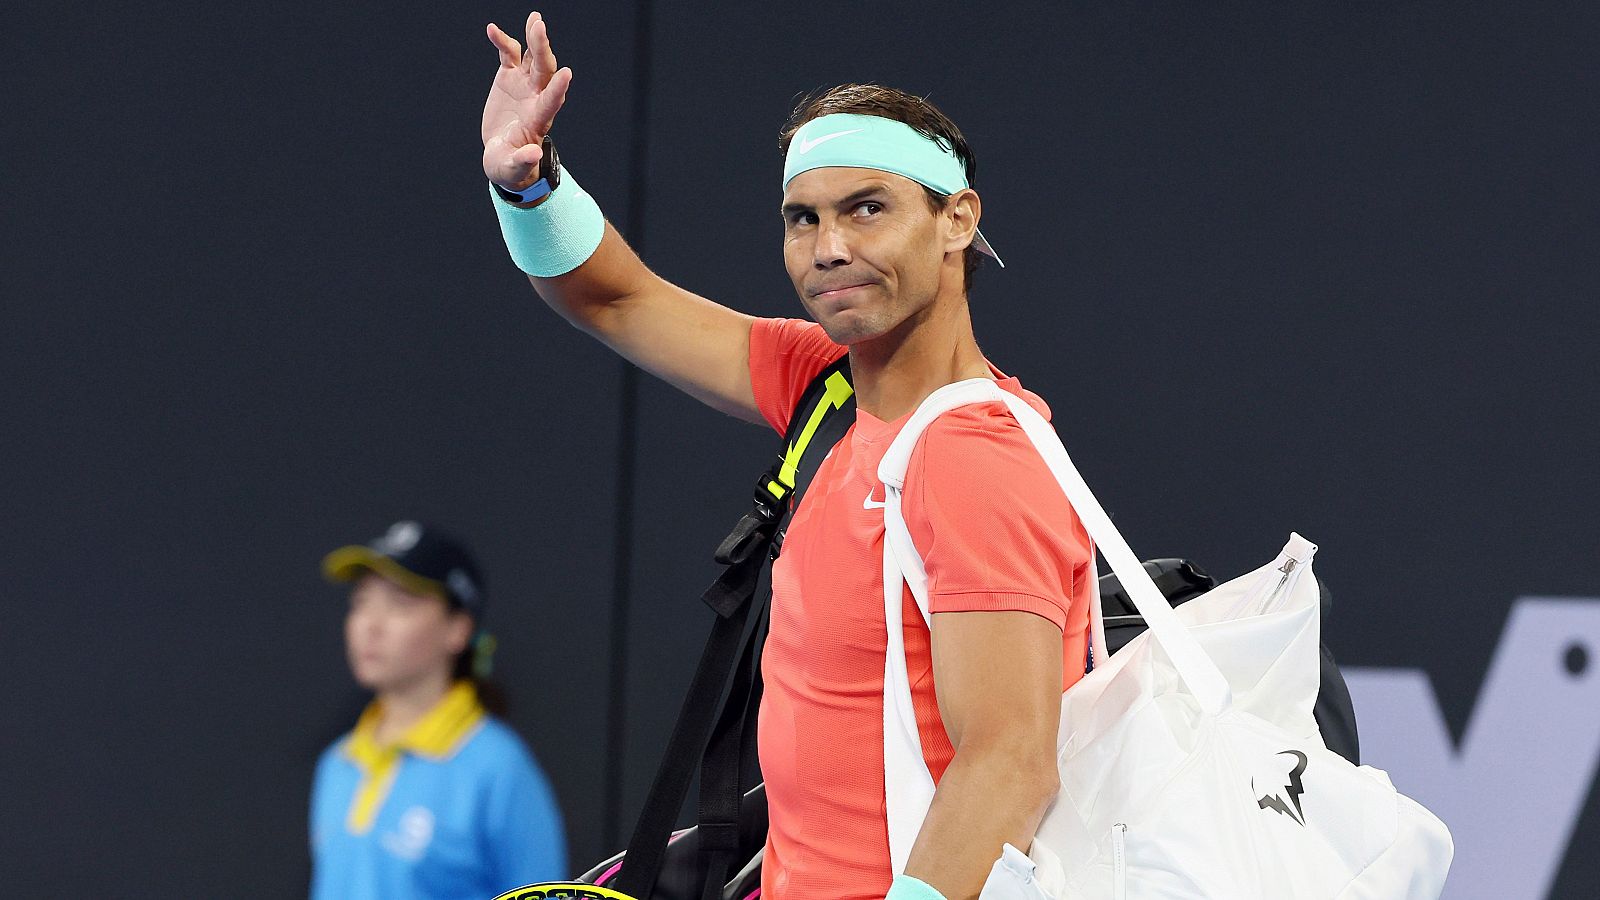 Rafa Nadal renuncia a jugar Indian Wells: "No me encuentro listo para jugar al máximo nivel"